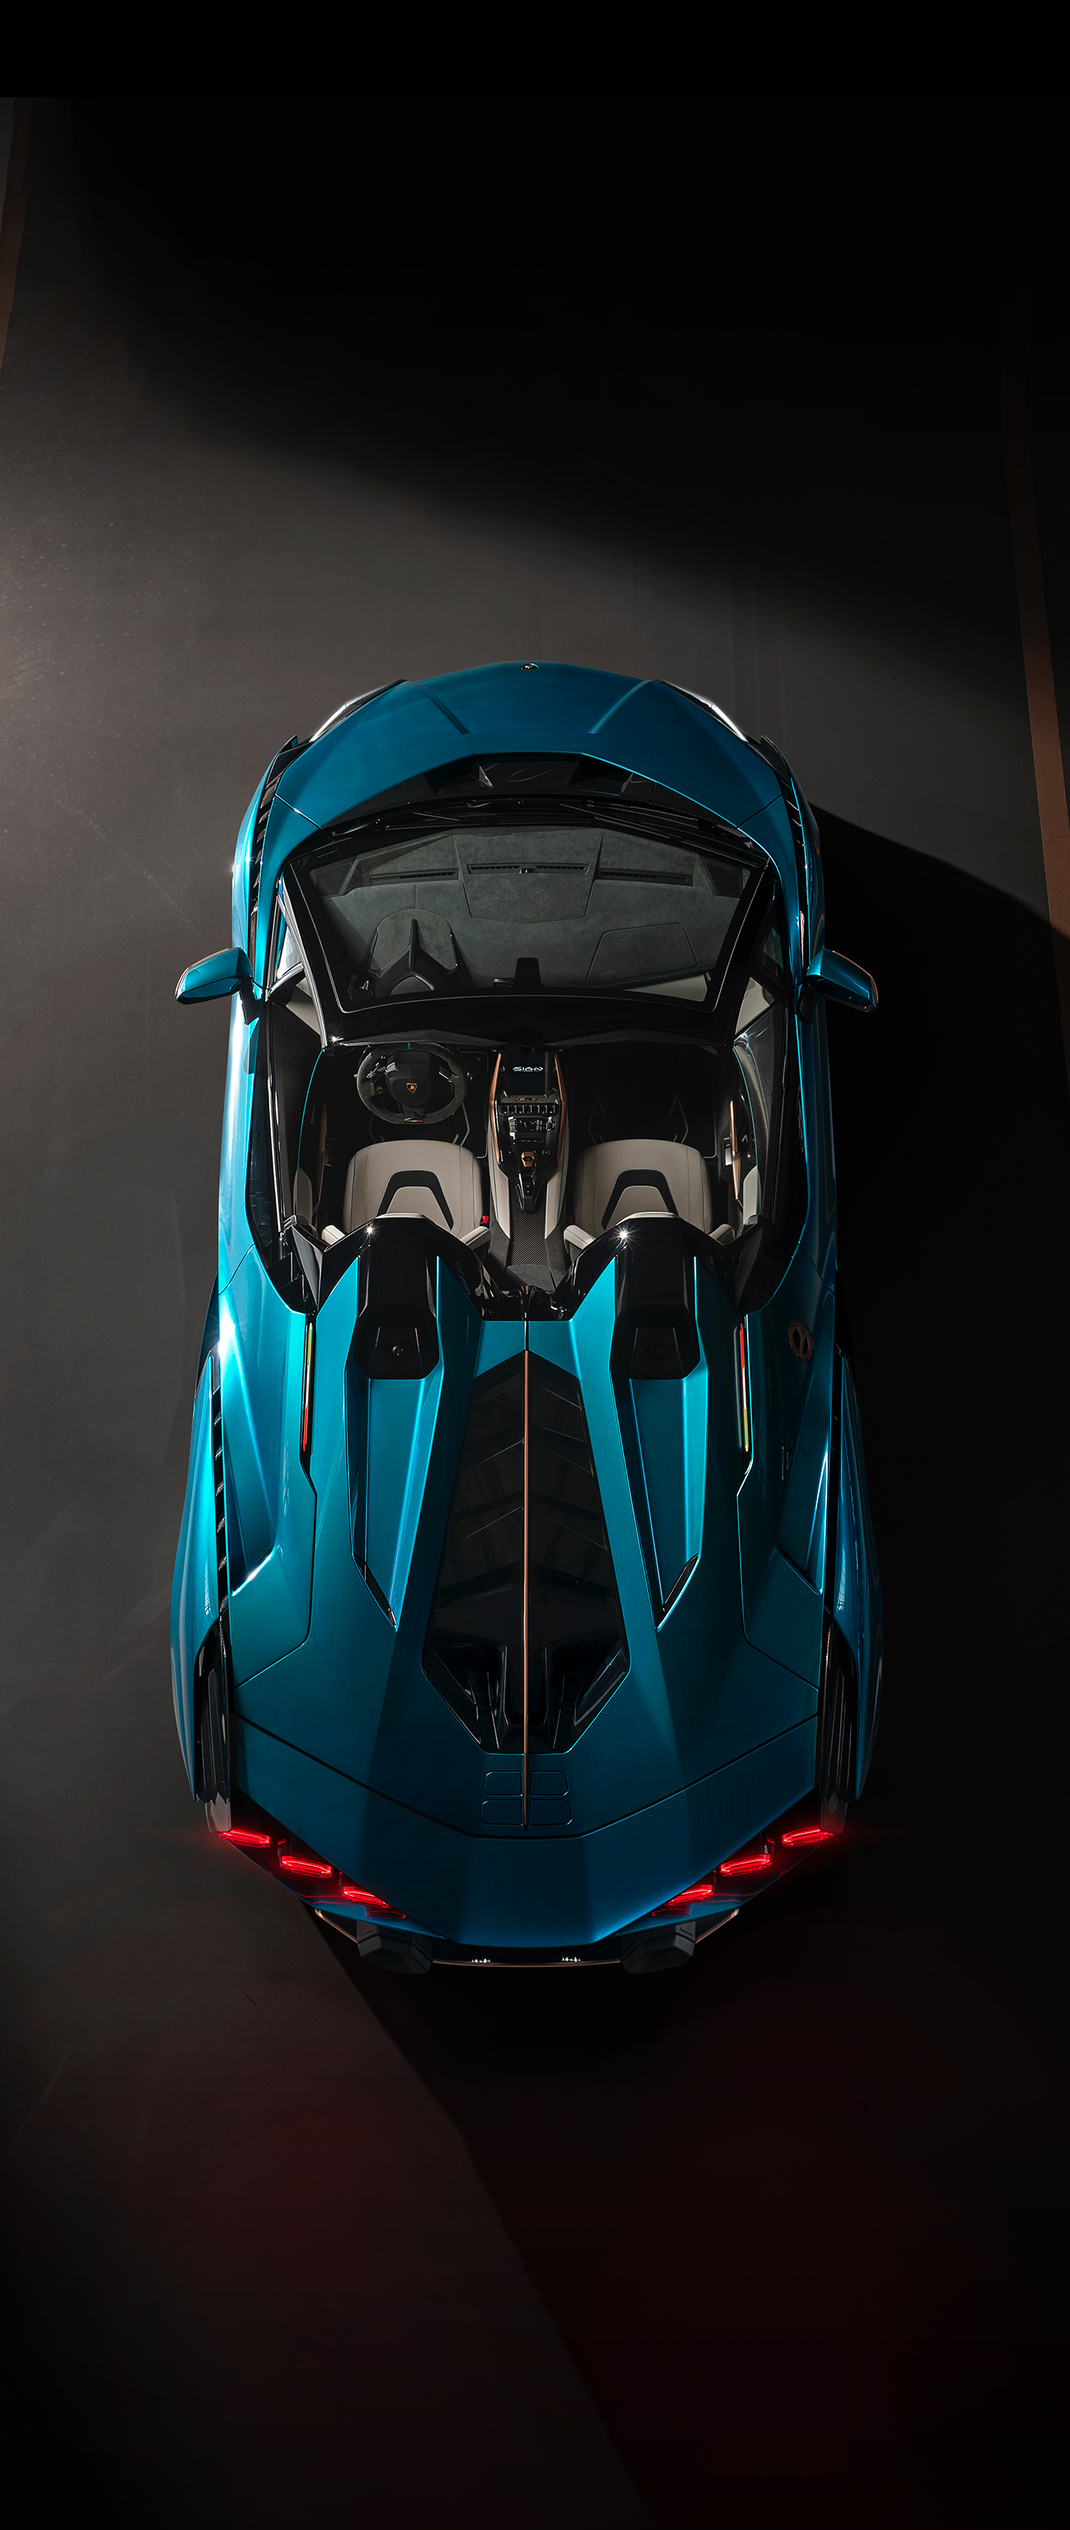 Lamborghini Sian Roadster hybrid V12 dropthetop!